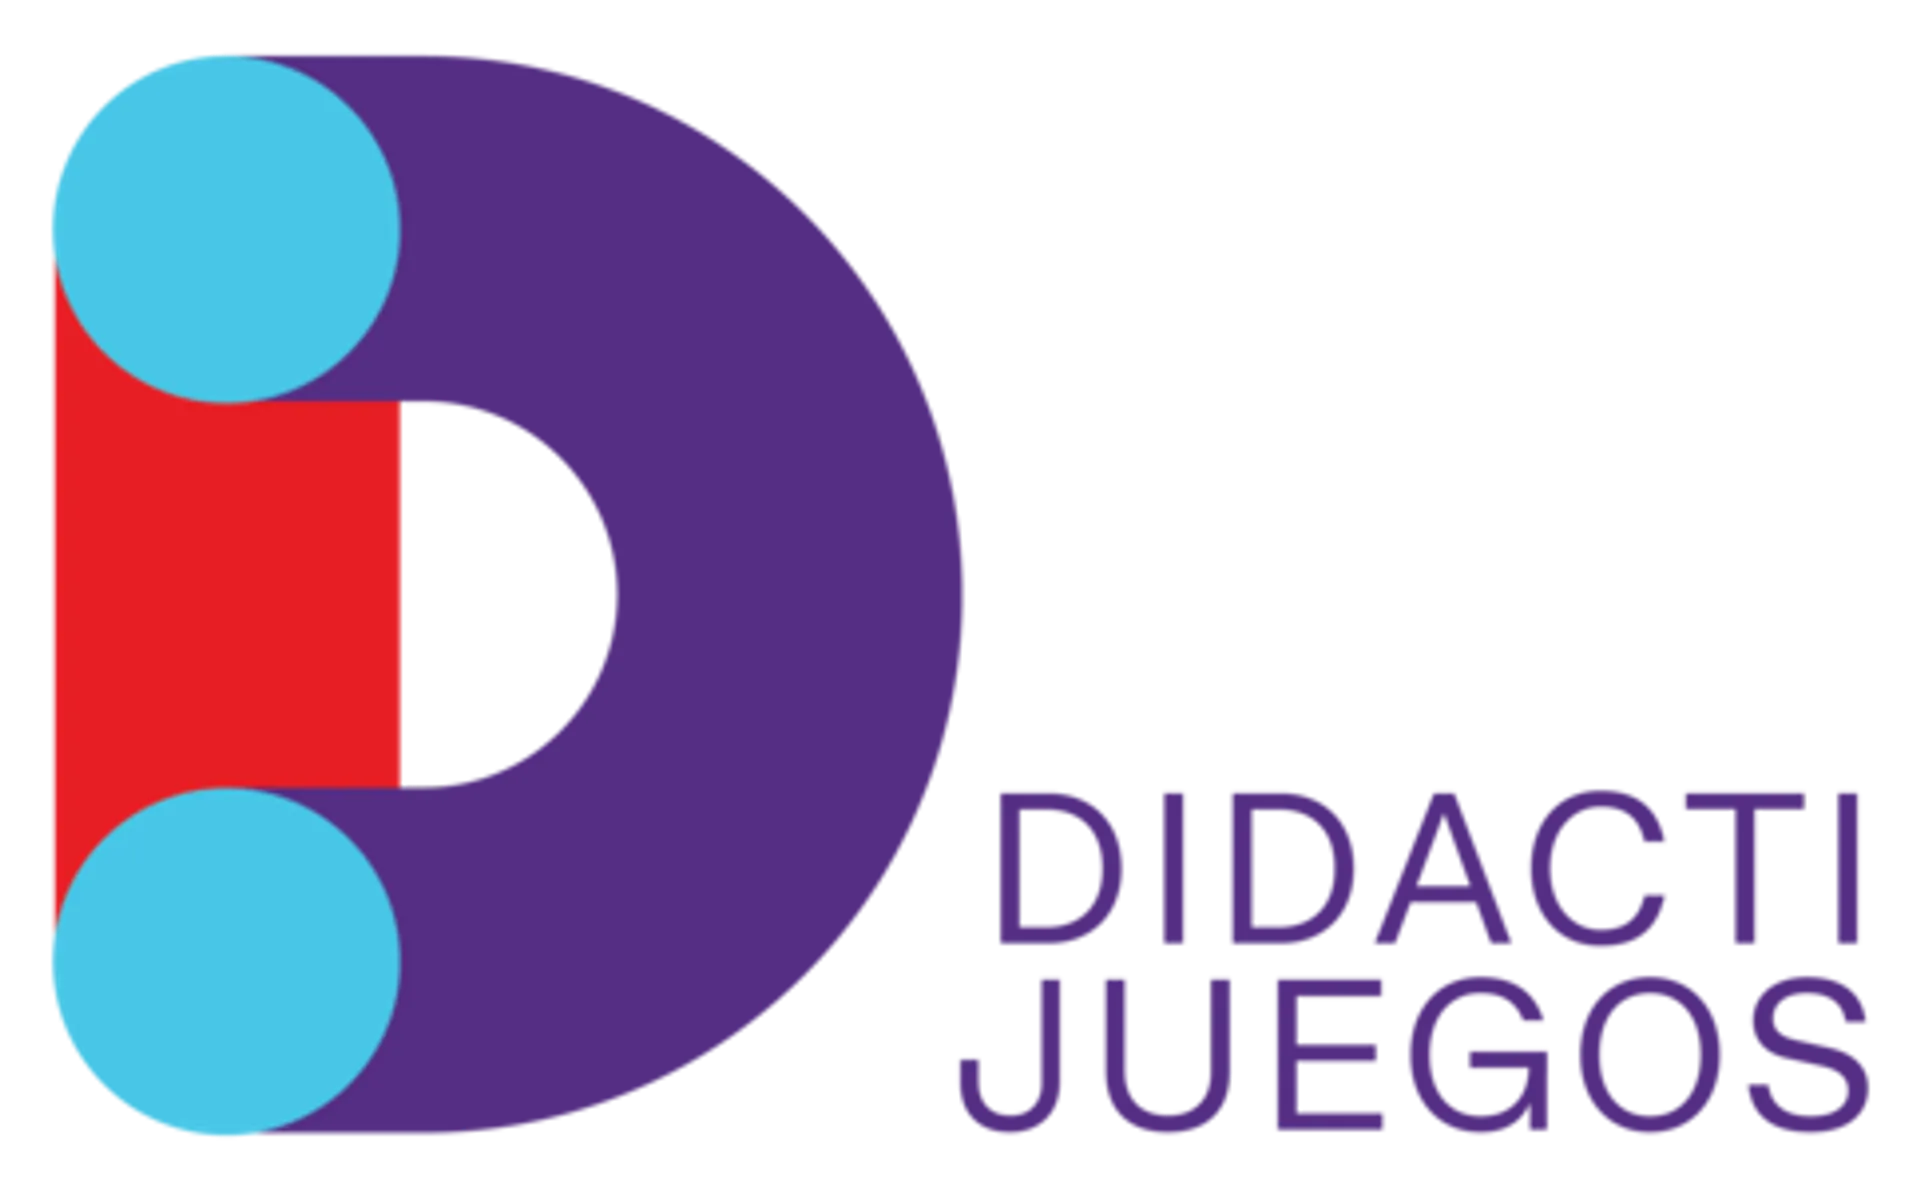 DIDACTI JUEGOS logo